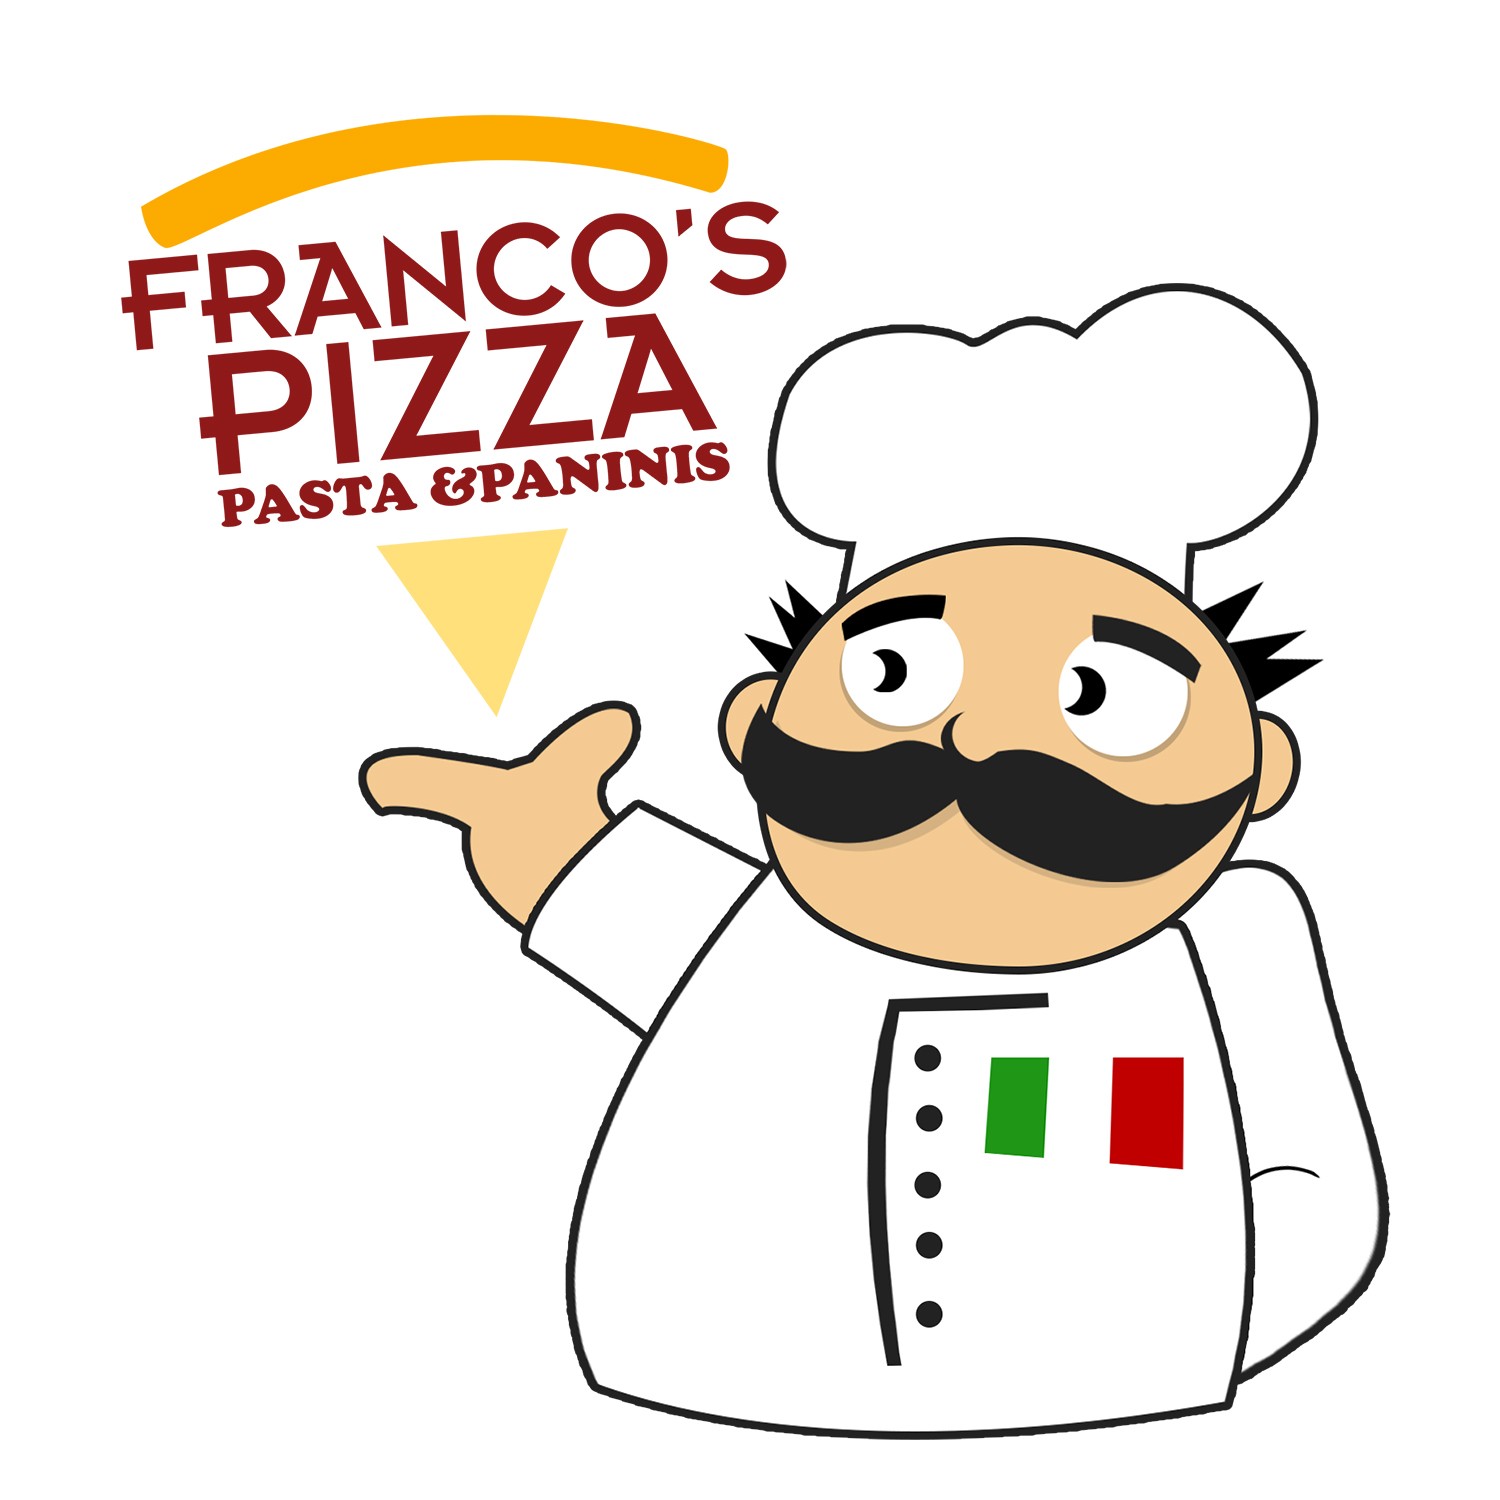 Franco's Pizza and Trattoria 